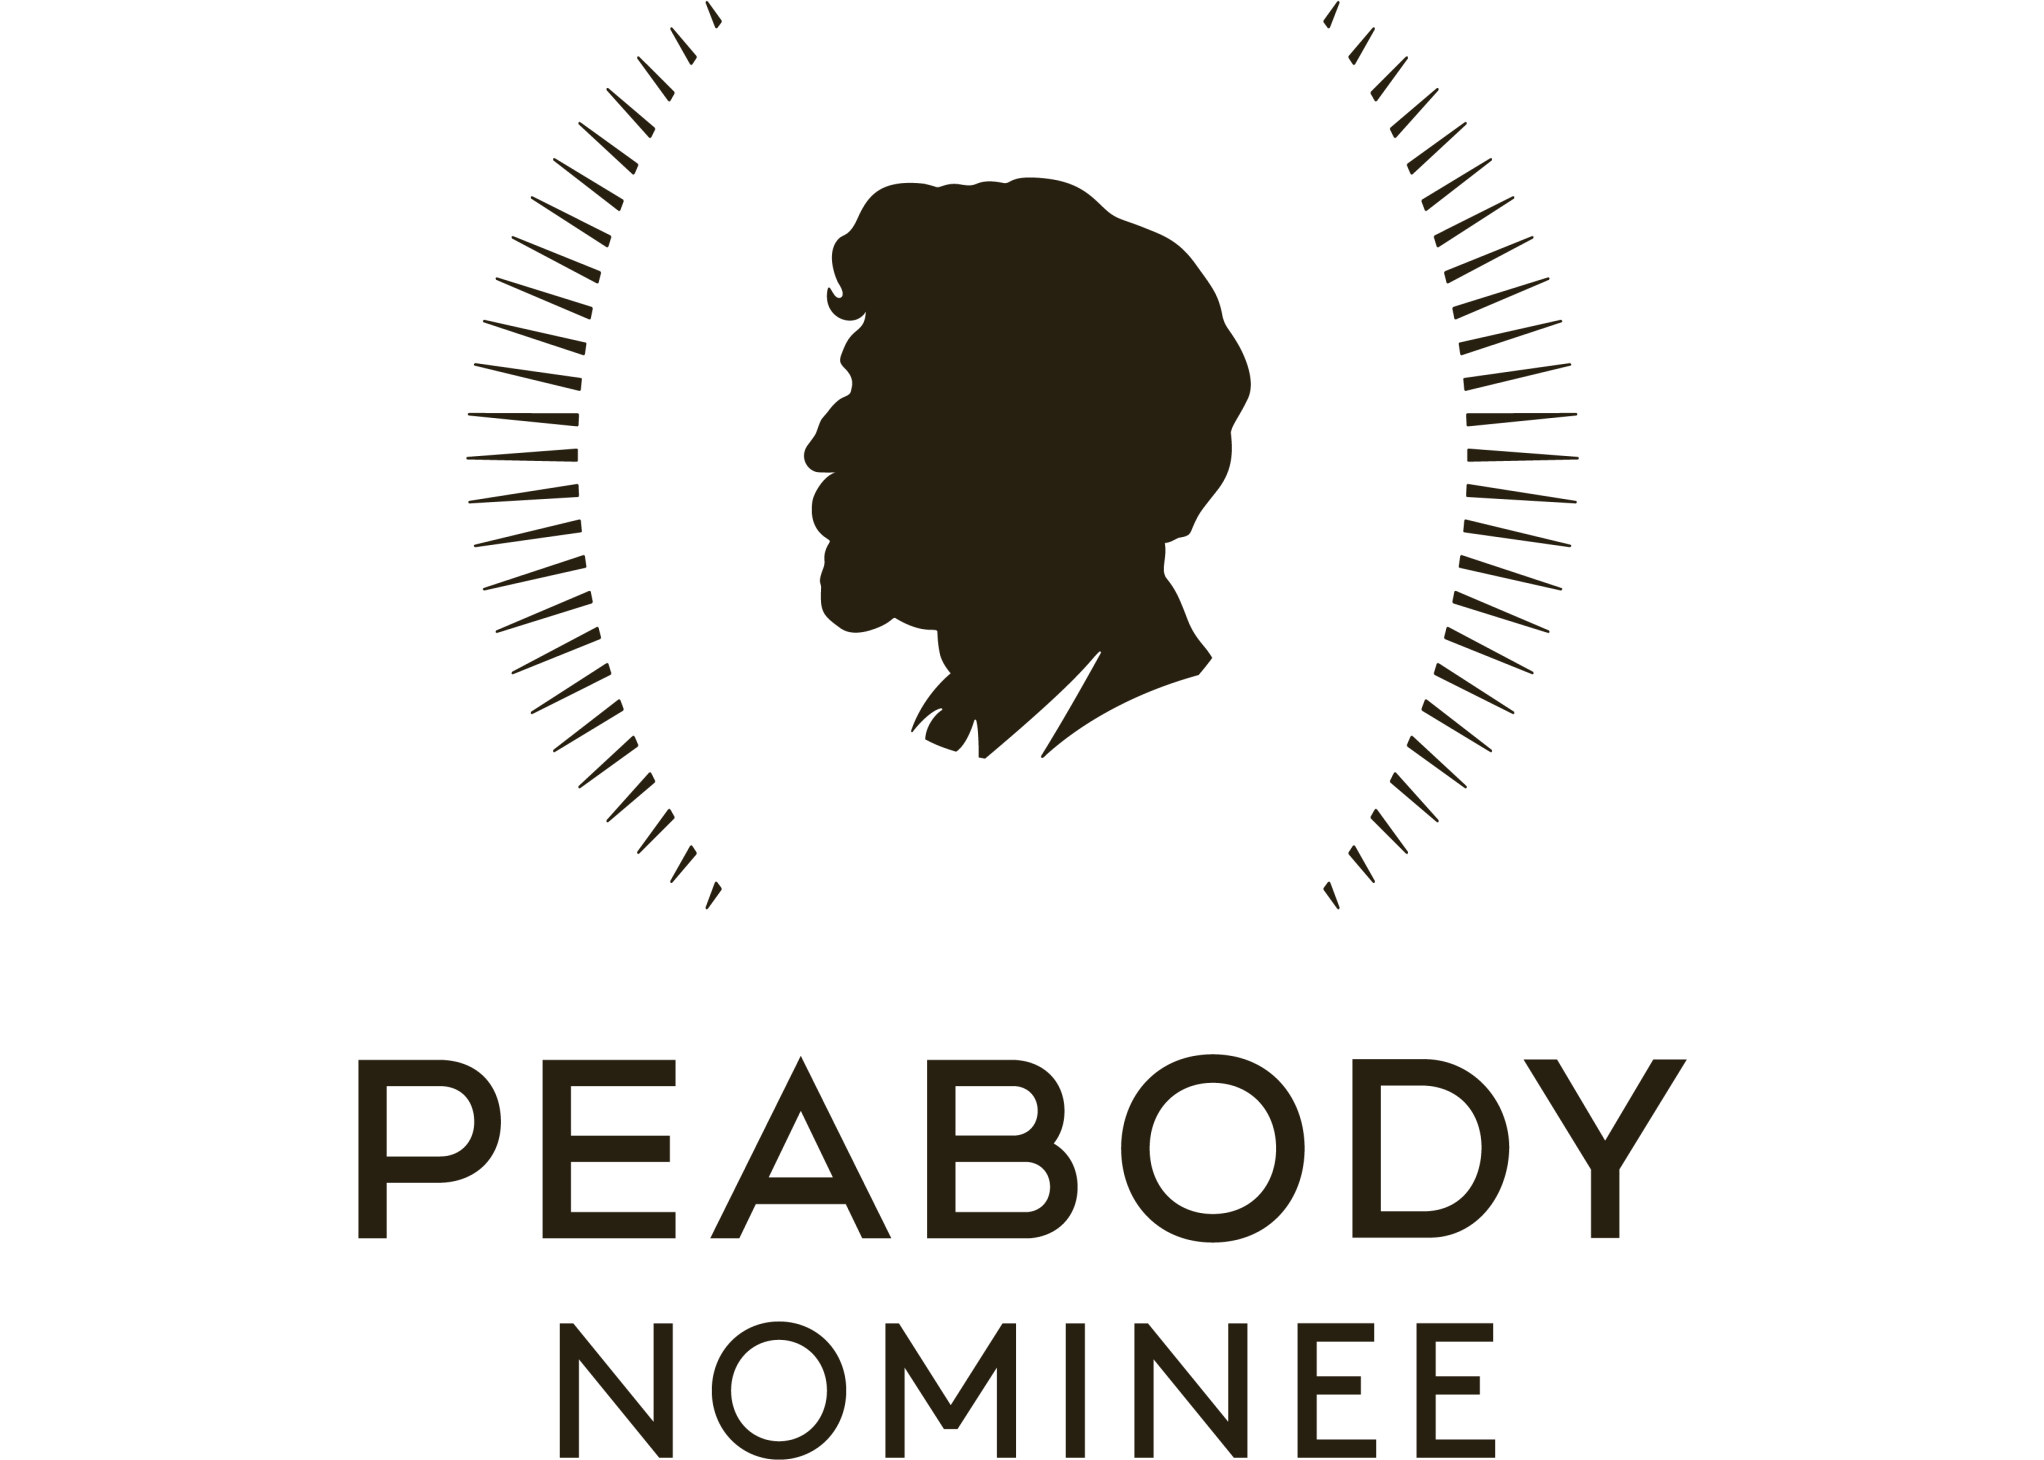 Peabody - Nominee